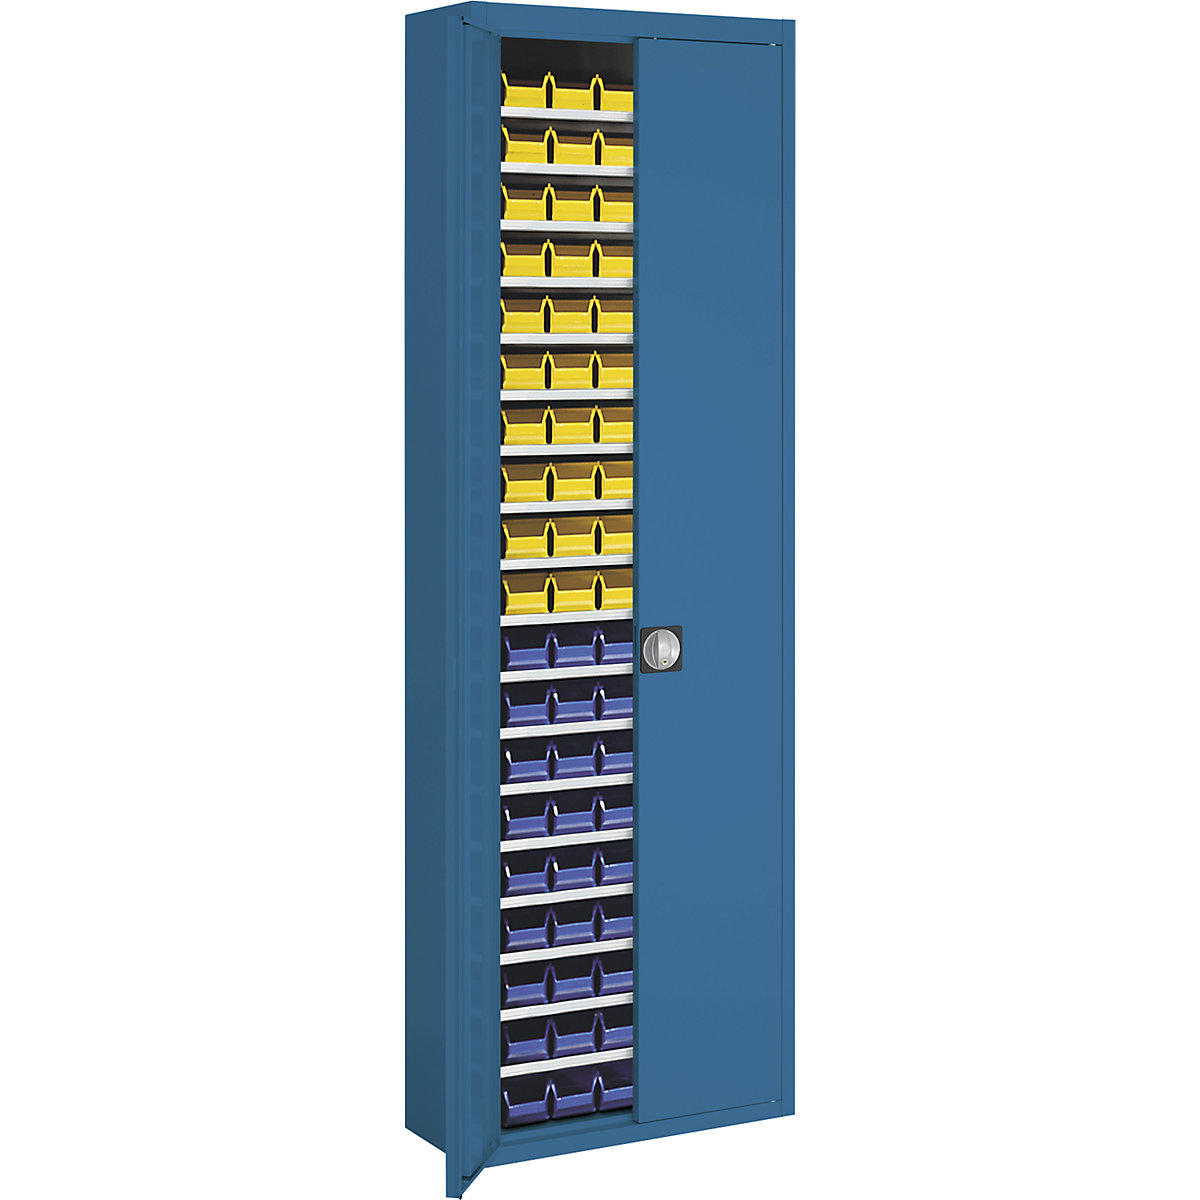 Skladová skříň s přepravkami s viditelným obsahem – mauser, v x š x h 2150 x 680 x 280 mm, dvoubarevné, korpus šedý, dveře modré, 114 přepravek-14